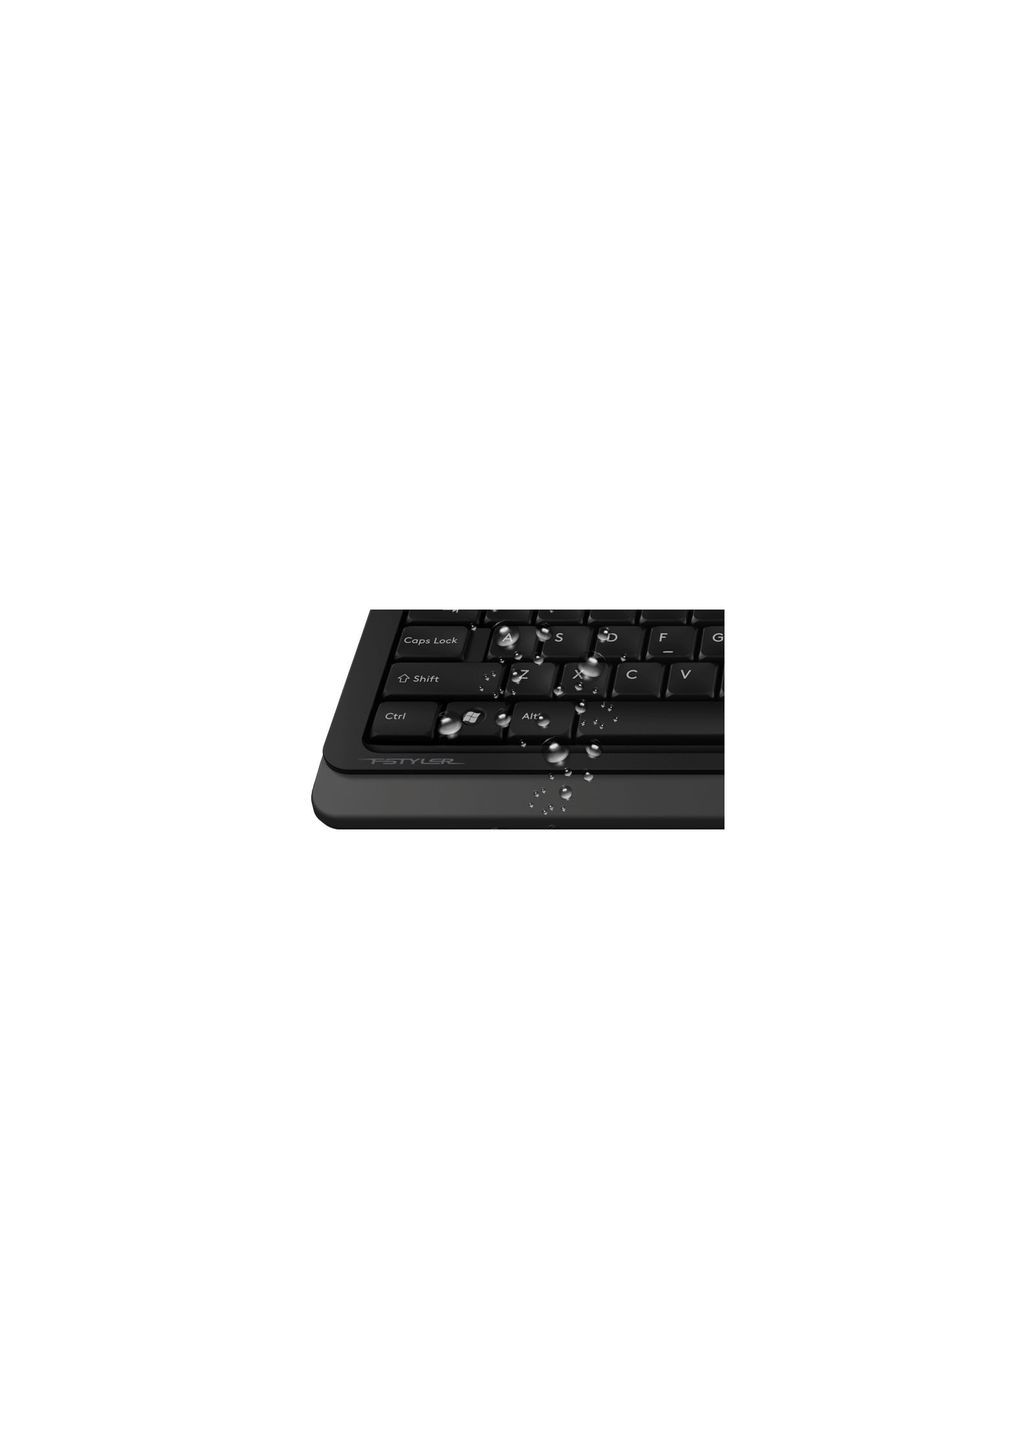 Клавіатура A4Tech fk10 orange (268141028)